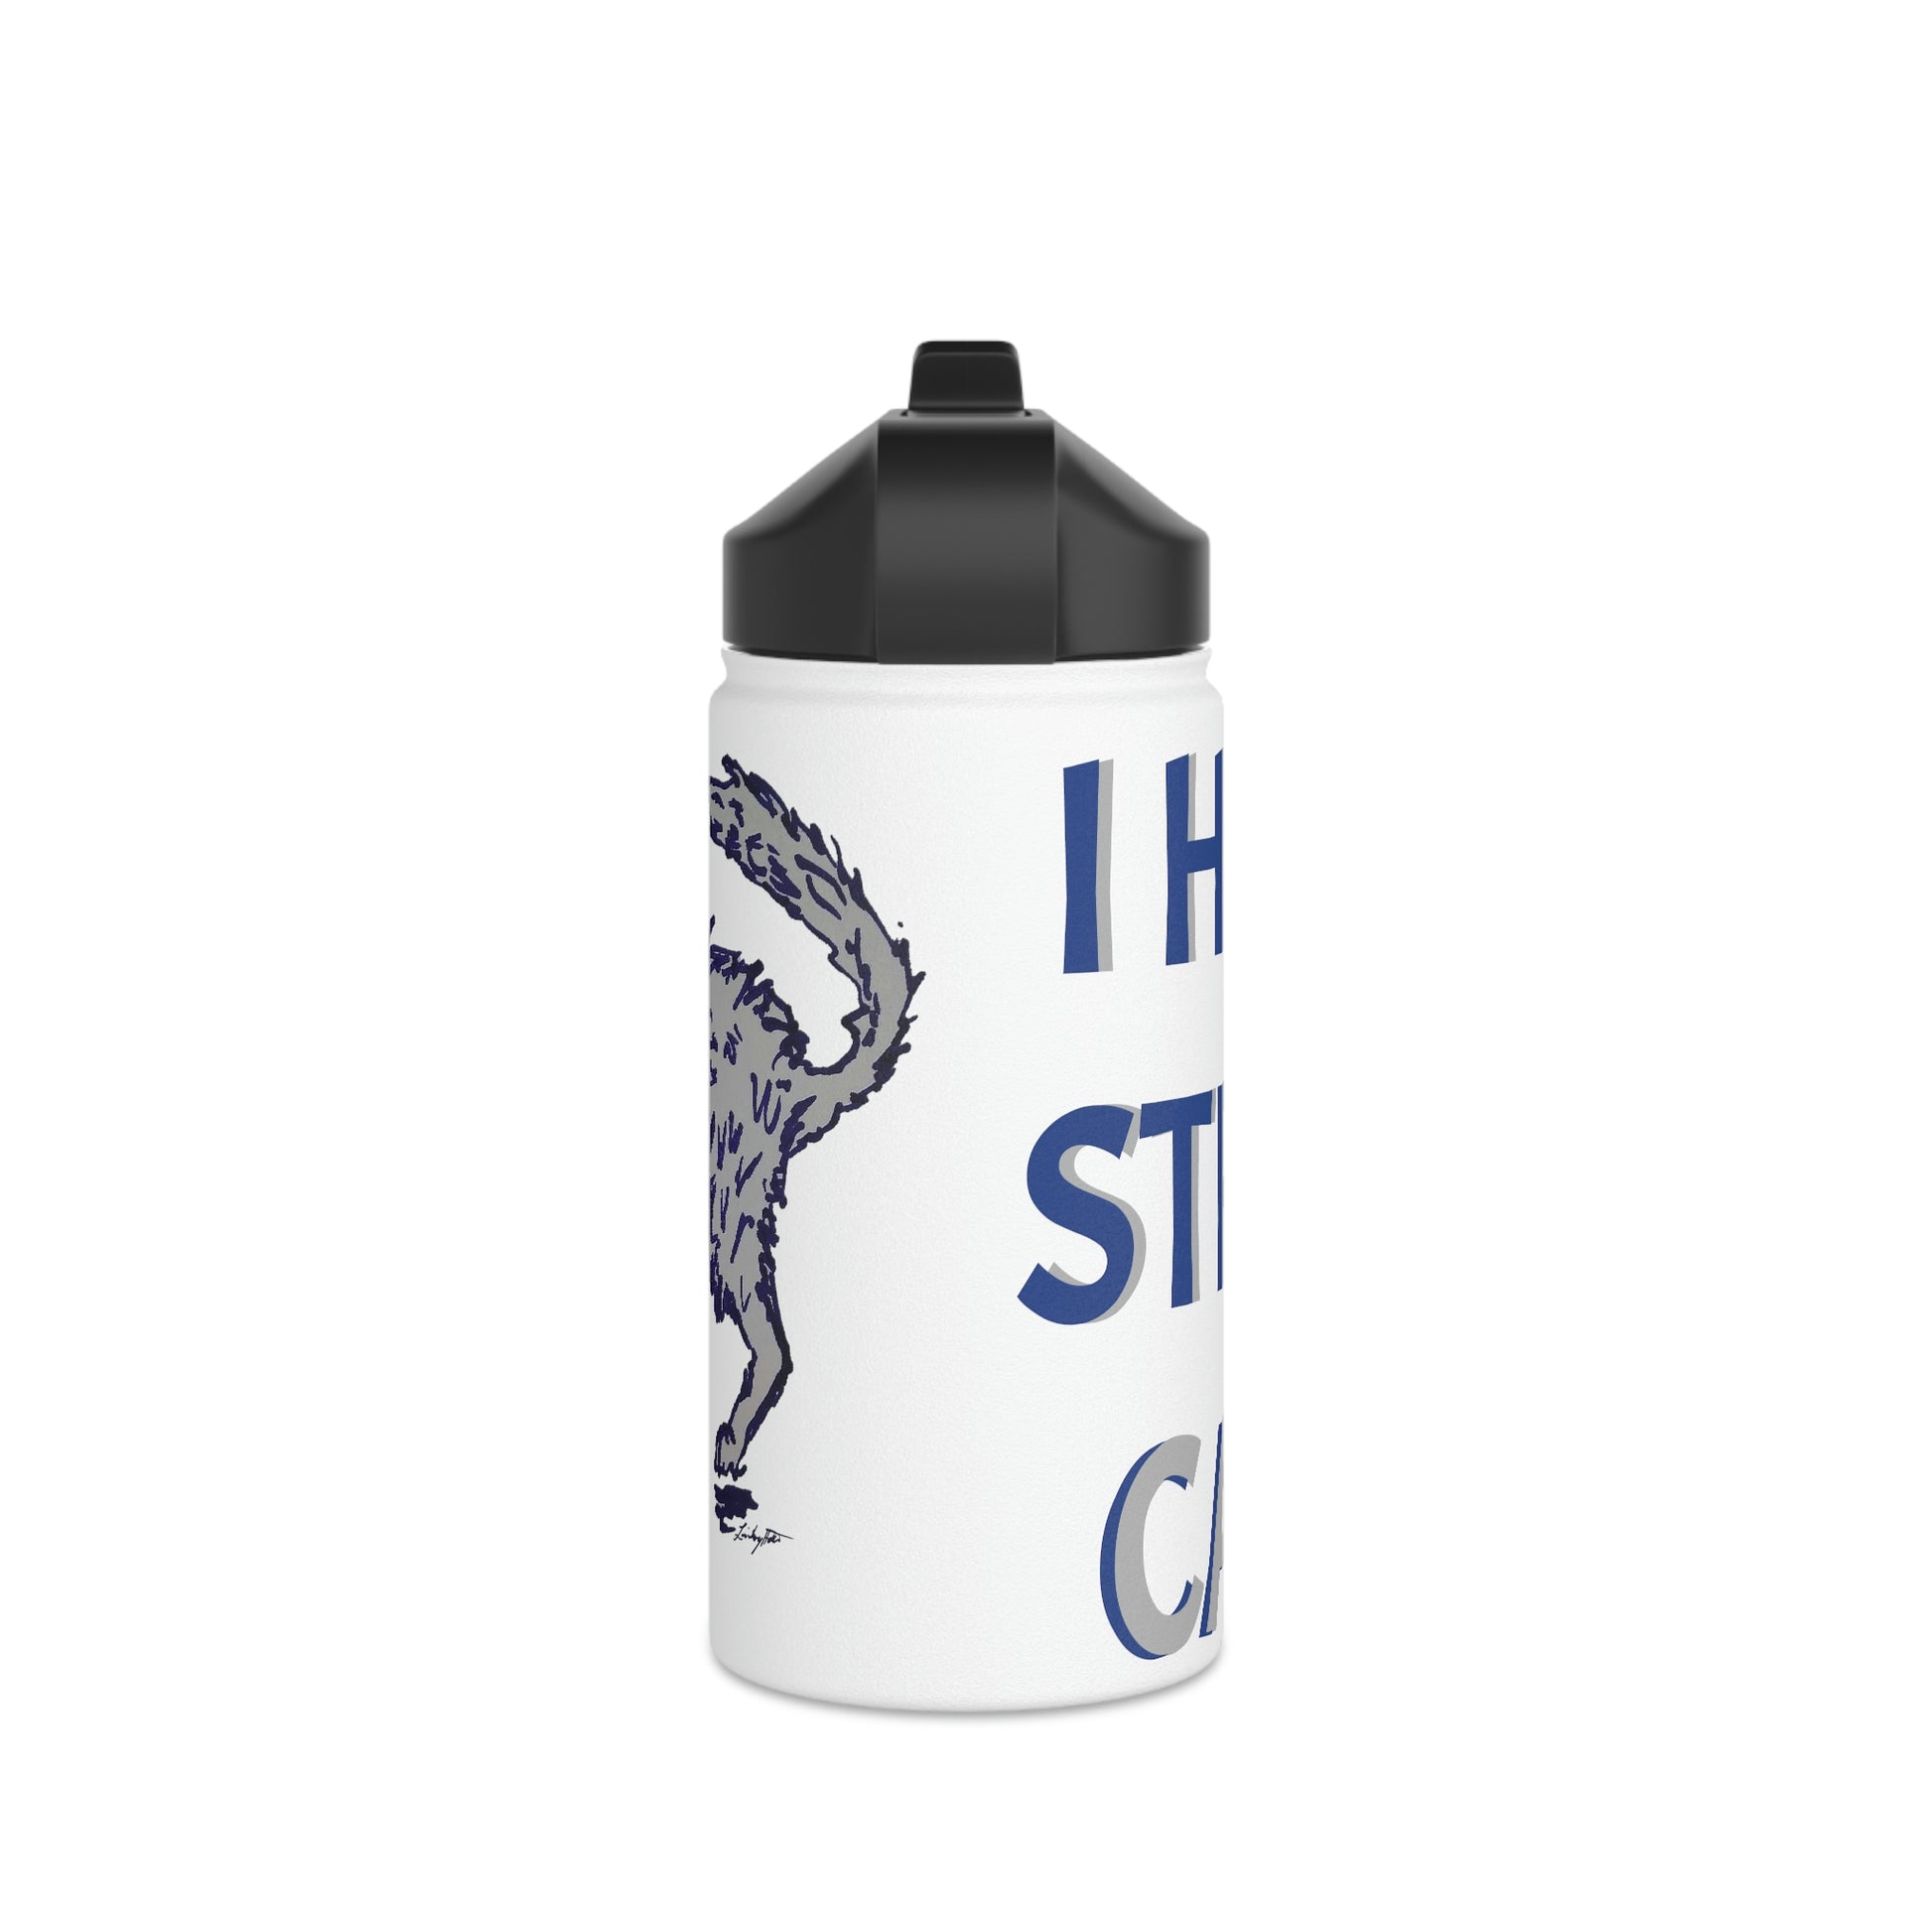 Stainless Steel Water Bottle Standard Lid 